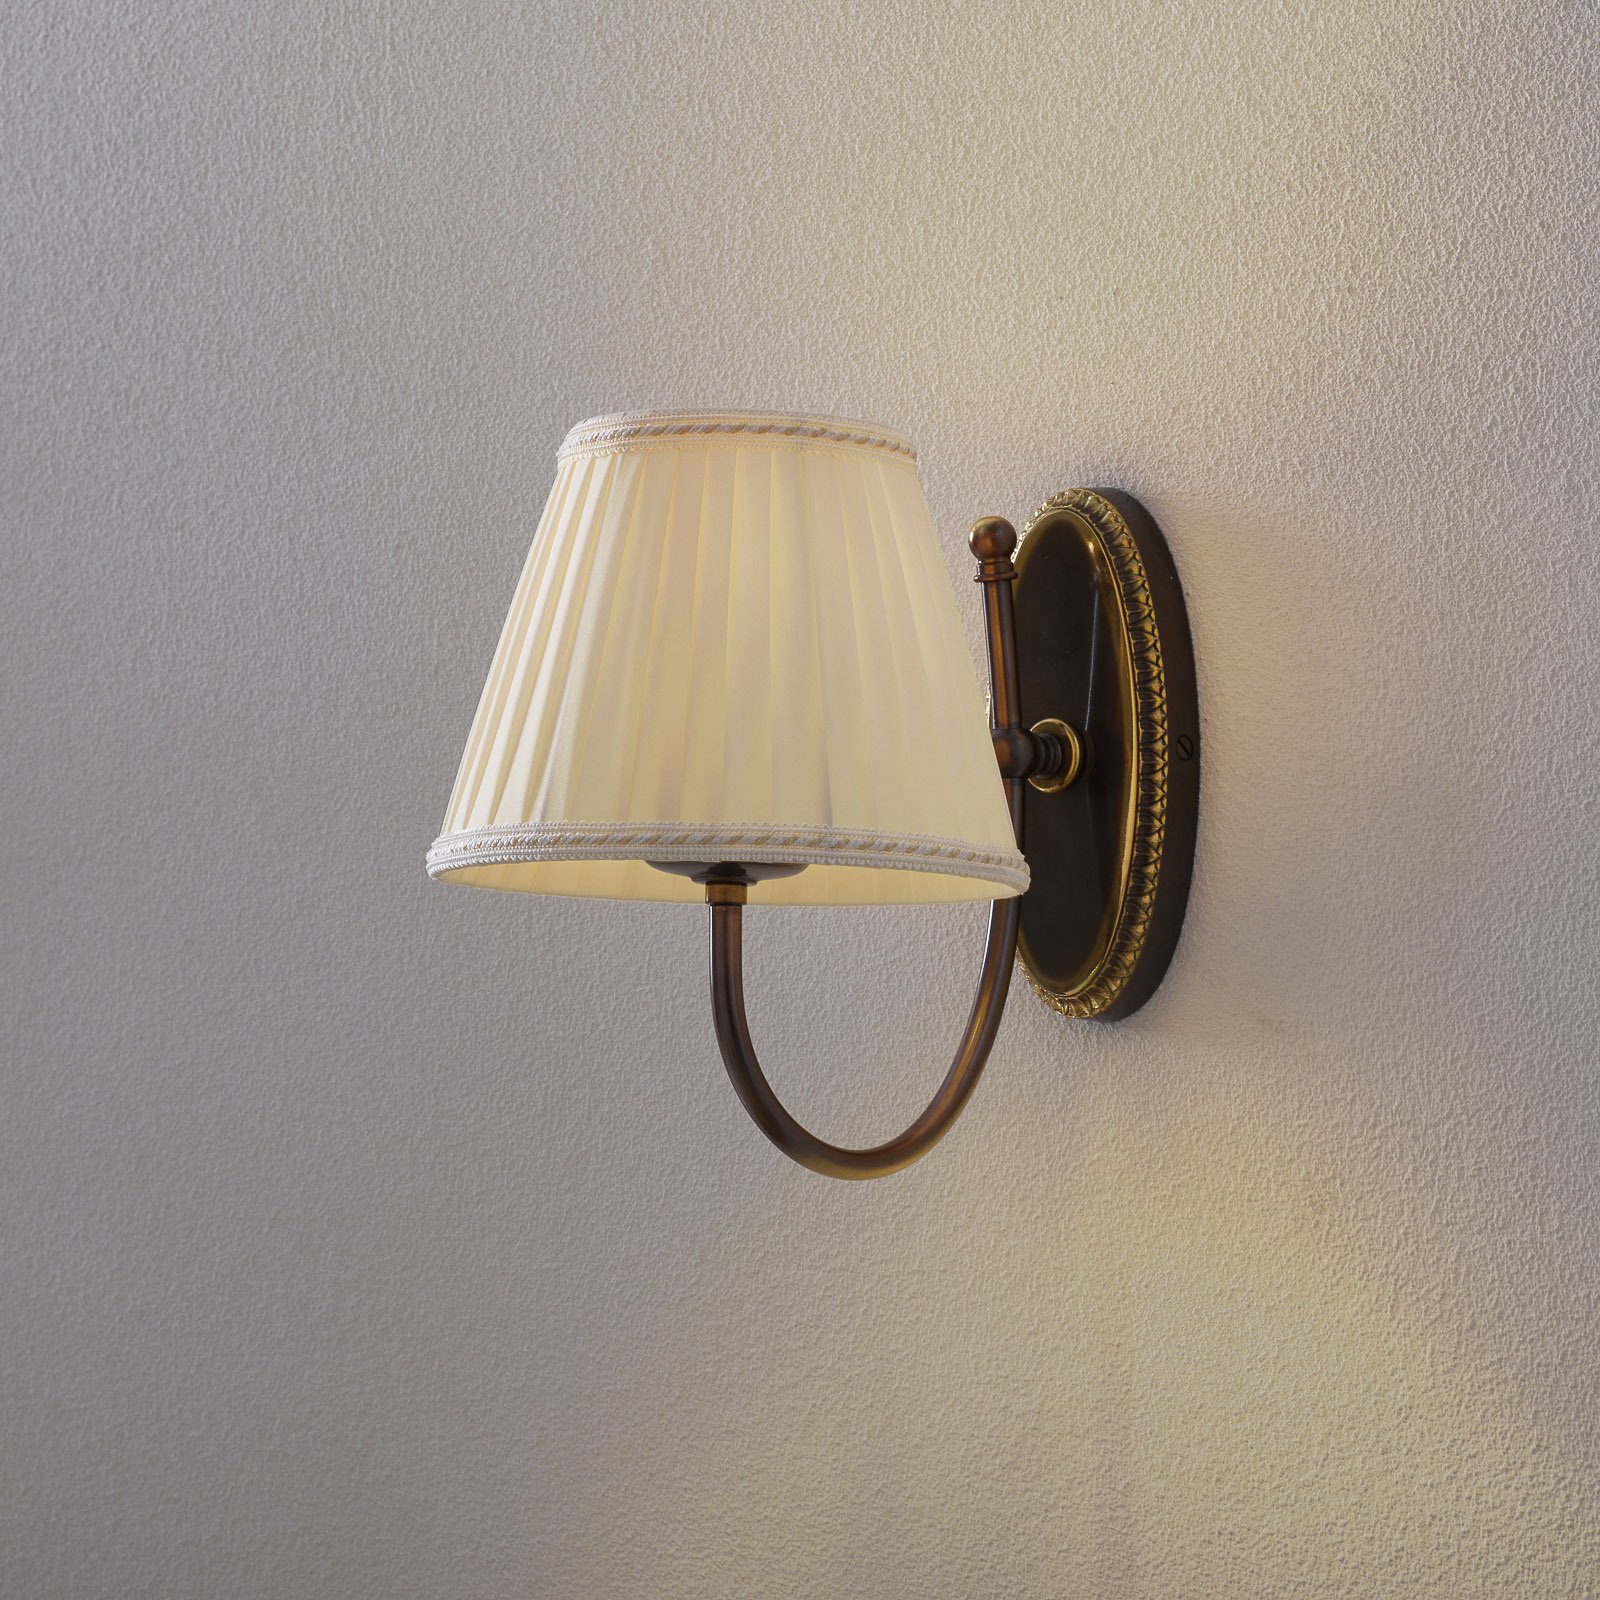 Candeeiro de parede clássico com braço curvo 1 luz.